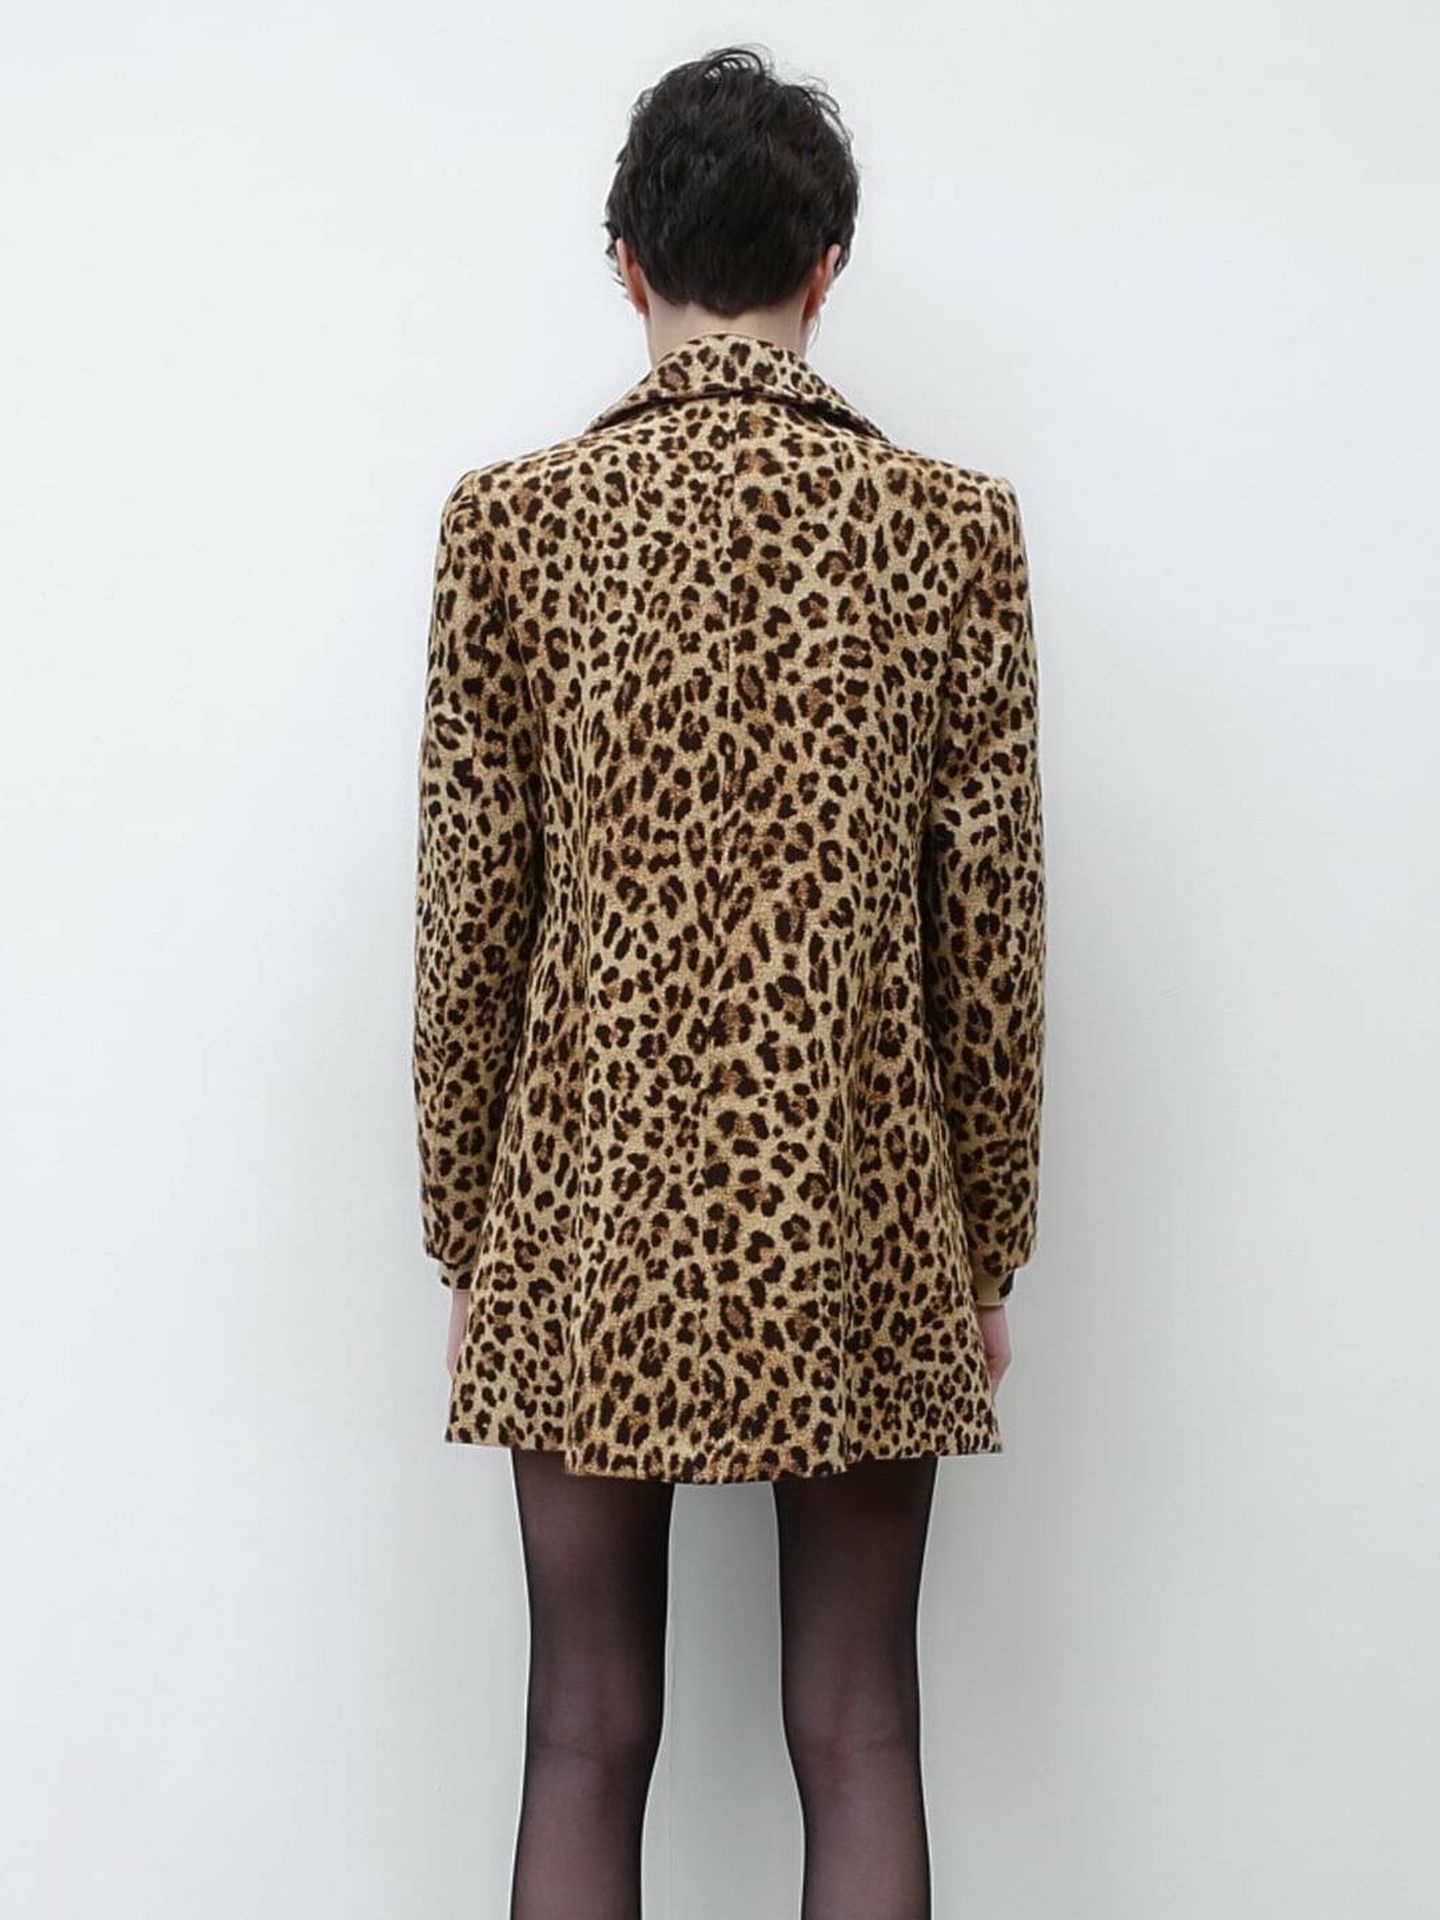 Nuevo abrigo de animal print. (Zara/Cortesía)